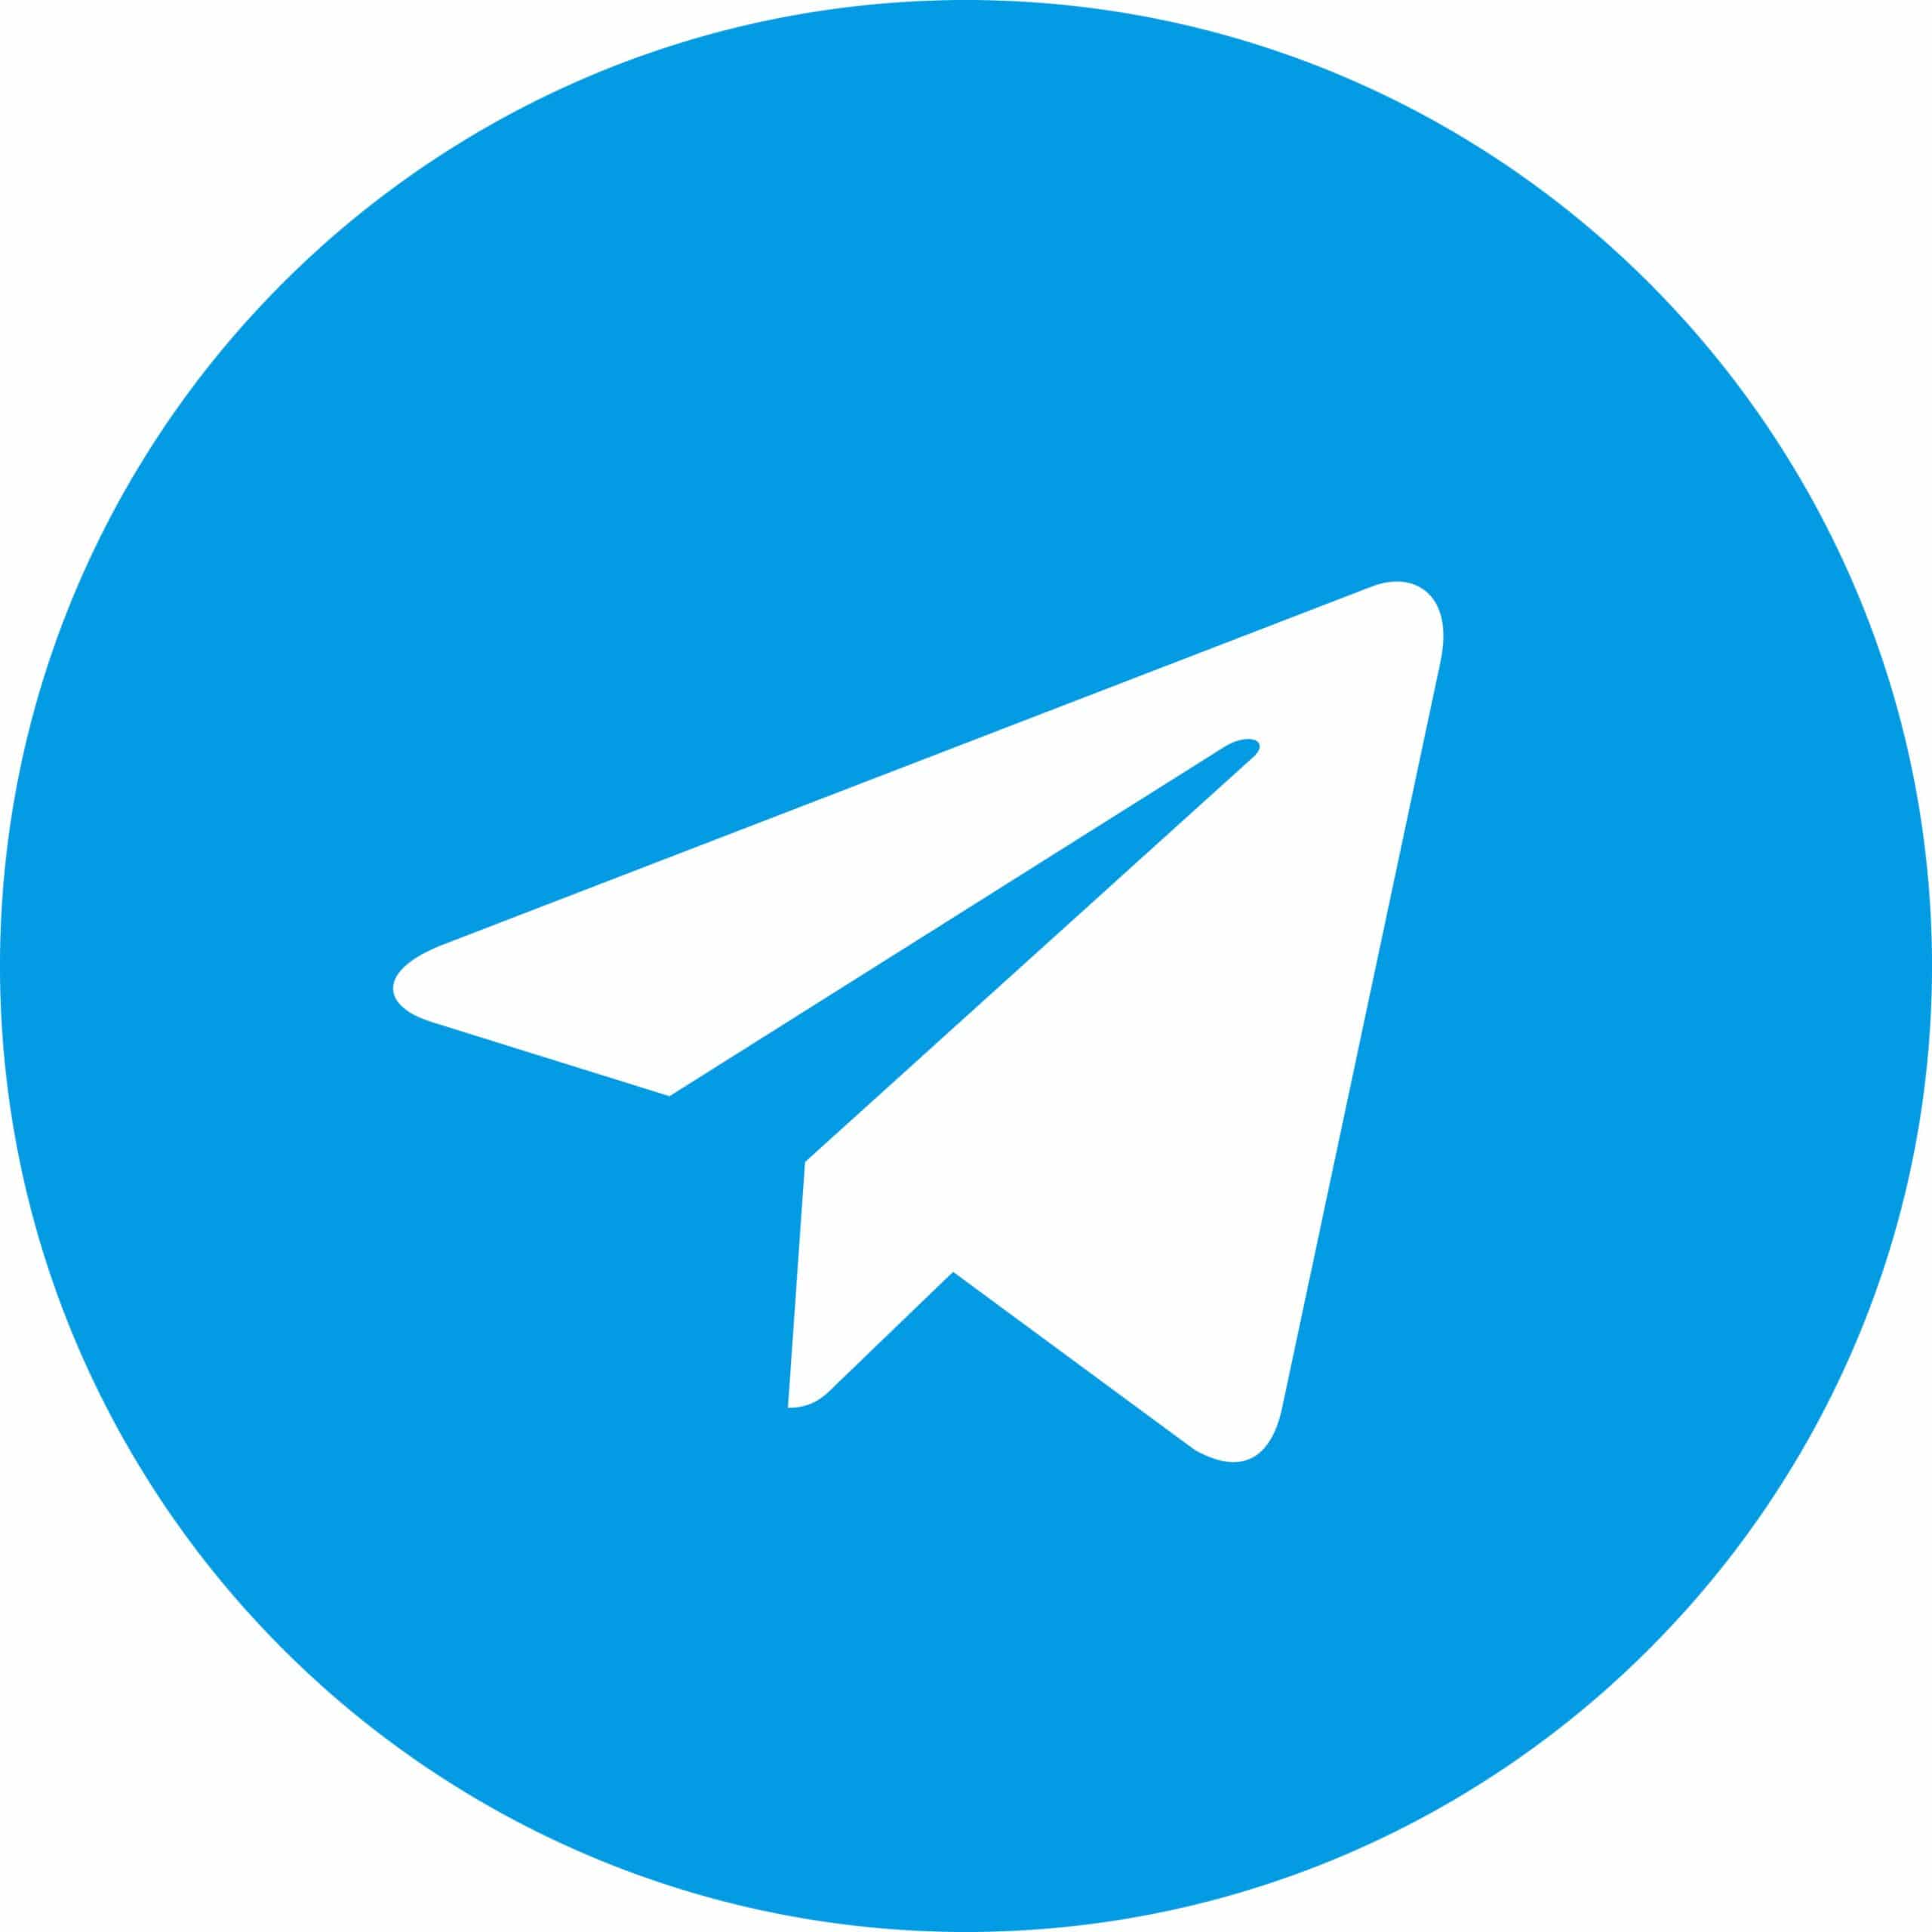 تماس با فروشگاه آنلاین قهوه حراجی در تلگرام